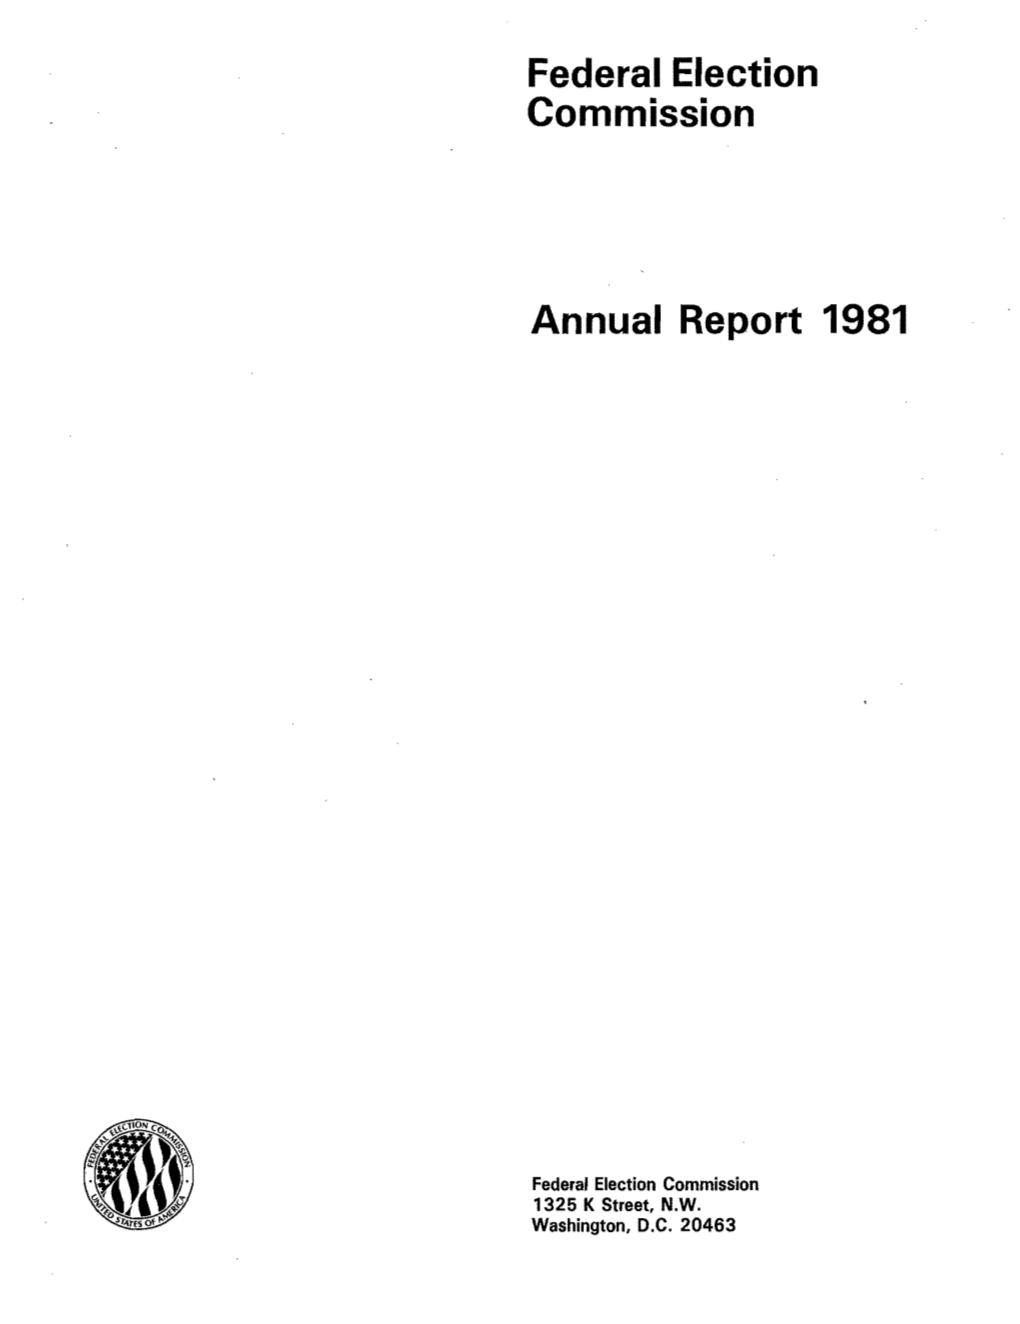 FEC Annual Report 1981